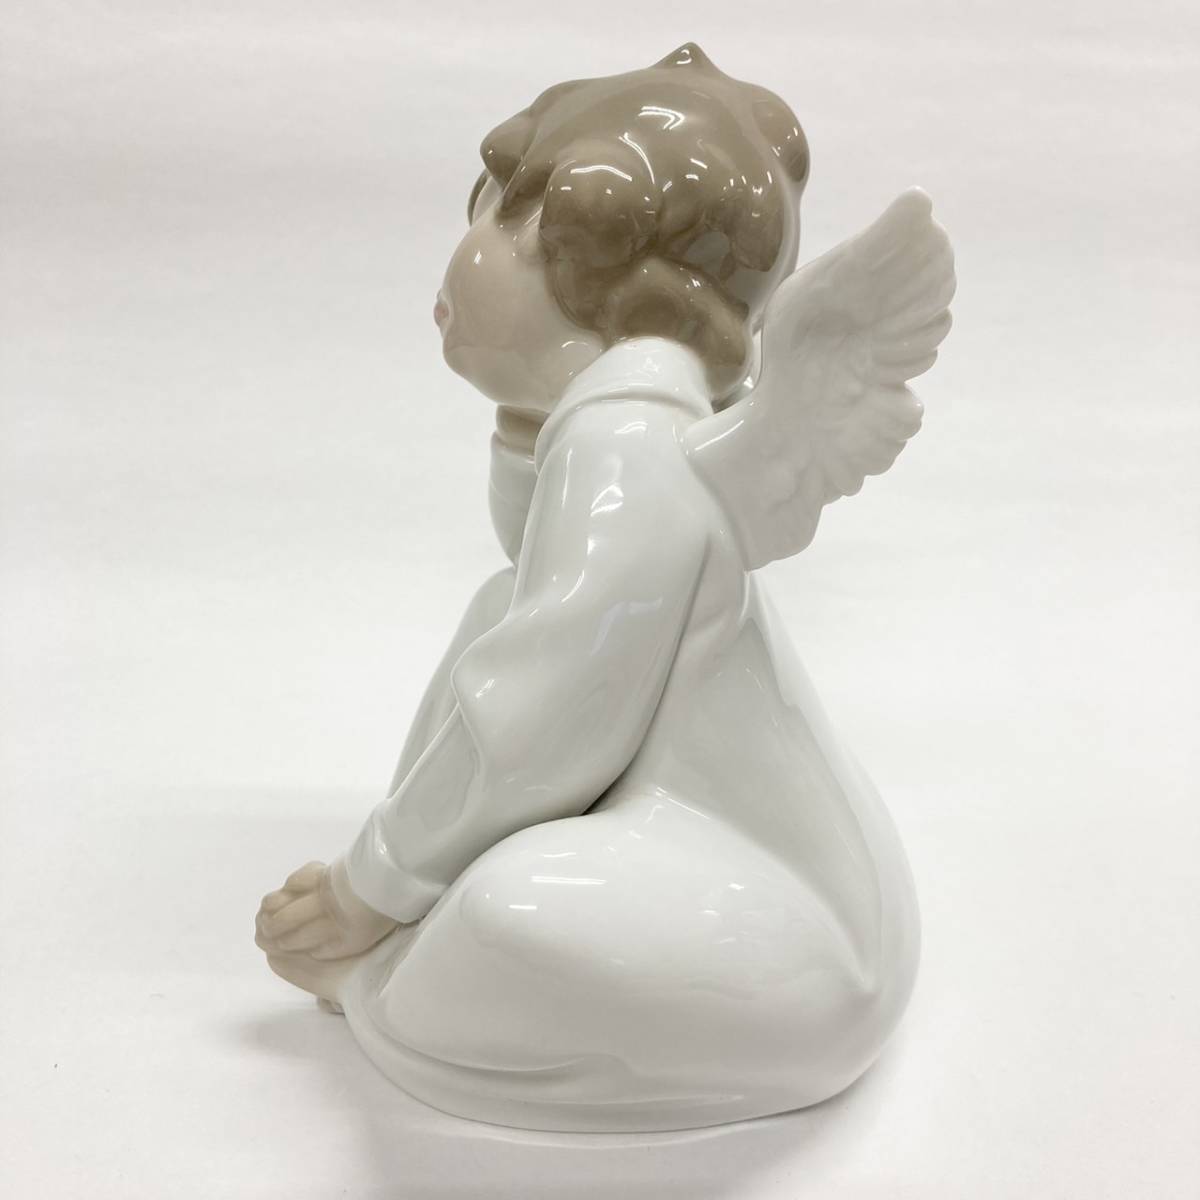 LLADRO(リヤドロ) フィギュリン 陶器人形 陶磁器 天使の考え事 エンジェル Angel dreaming [4961]_画像5